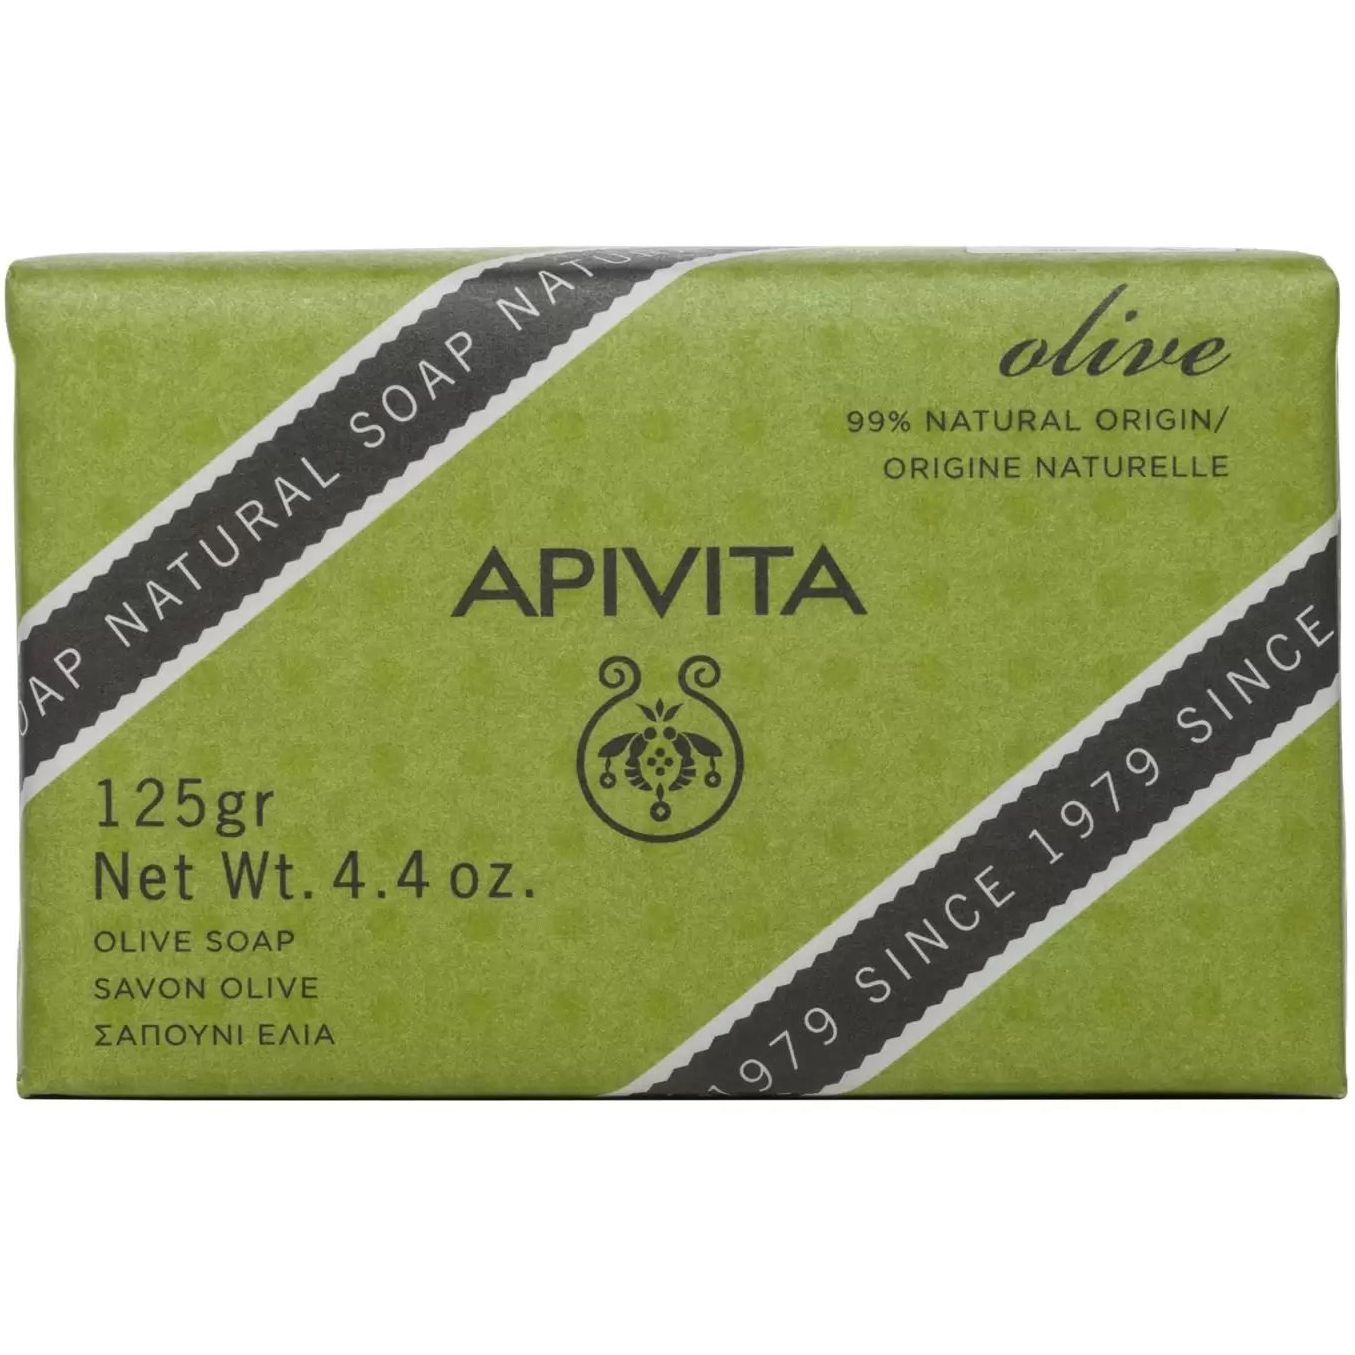 Мыло Apivita с оливой, 125 г - фото 1